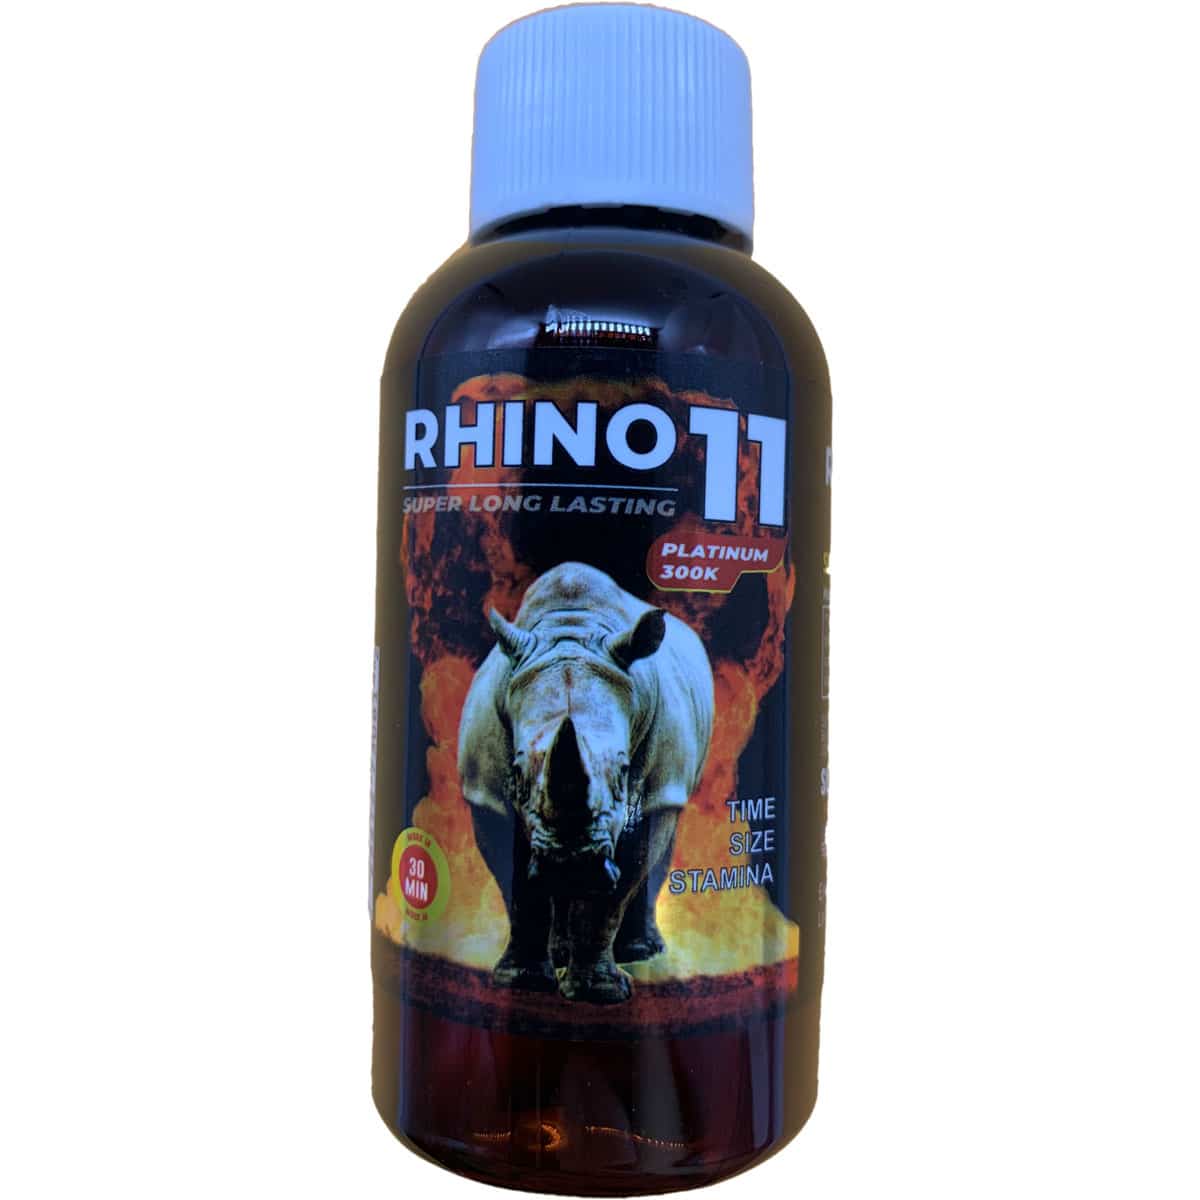 rhino 7 updates